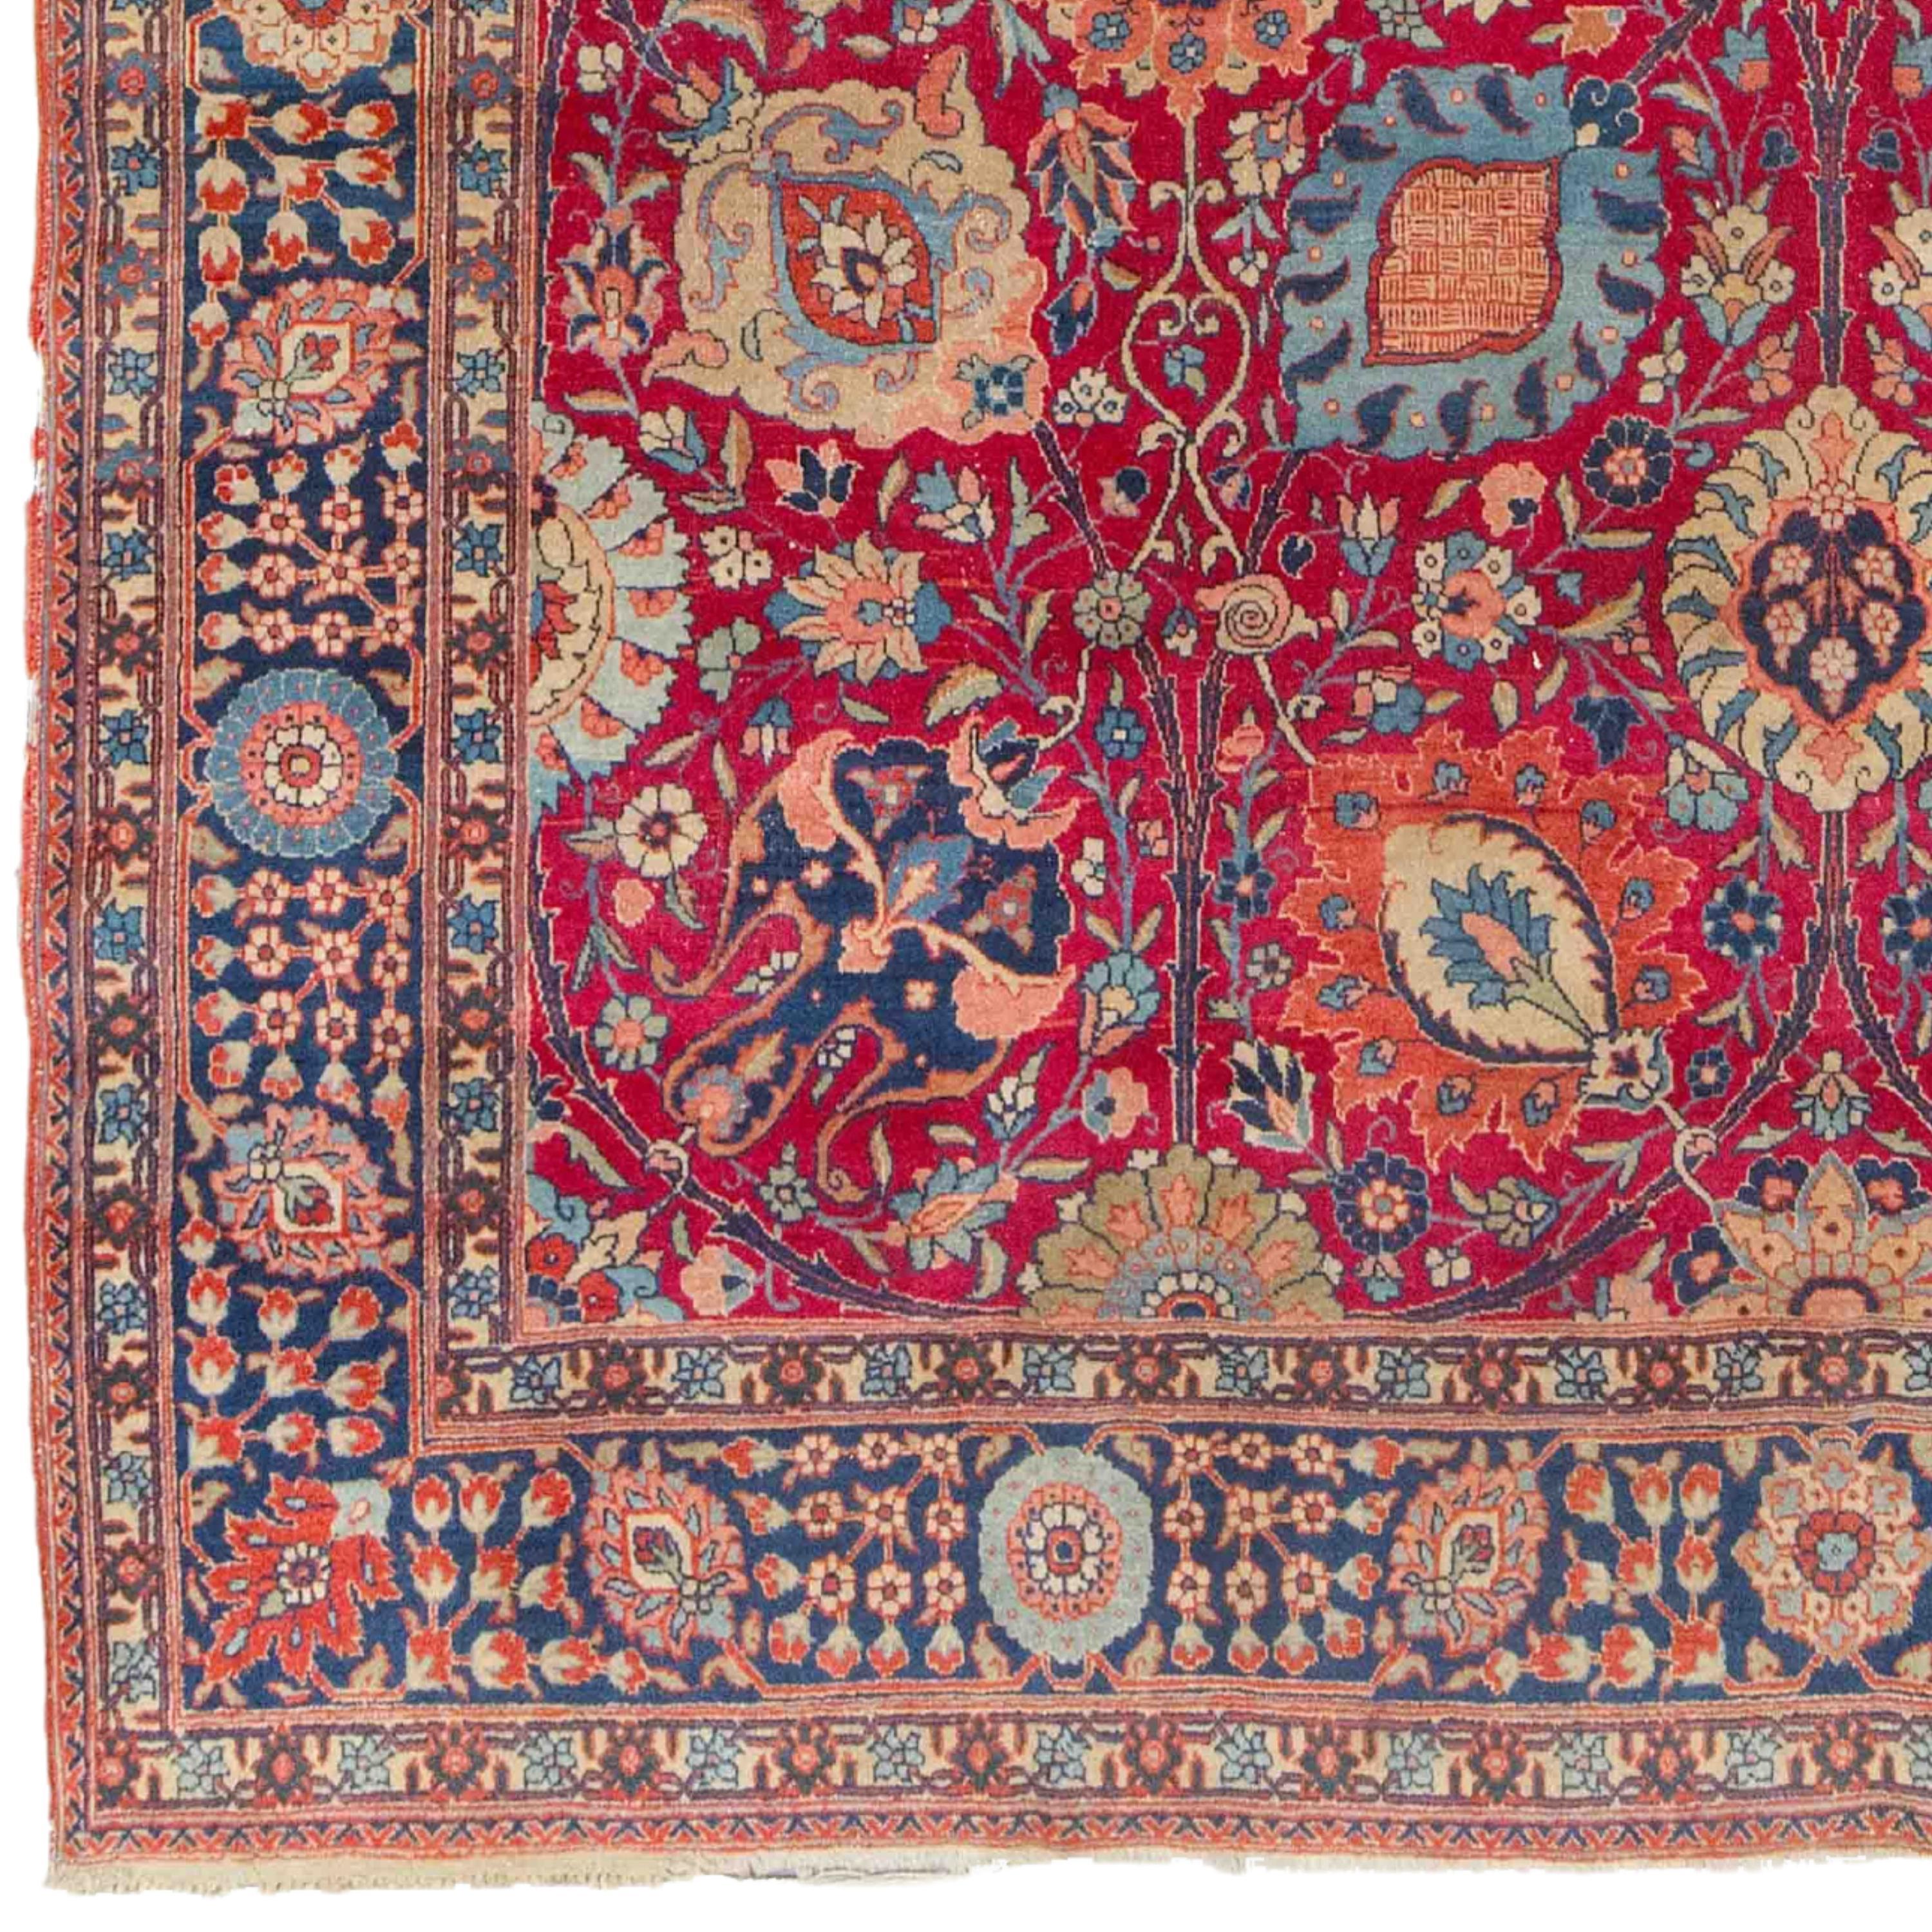 Tapis ancien de Tabriz 260 x 360cm (8,53 - 11,81 ft) Fin du 19ème siècle Tapis de Tabriz

À partir du milieu du XIXe siècle, la production commerciale de tapis a repris en Azerbaïdjan, et Tabriz est devenu l'un des centres les plus importants du